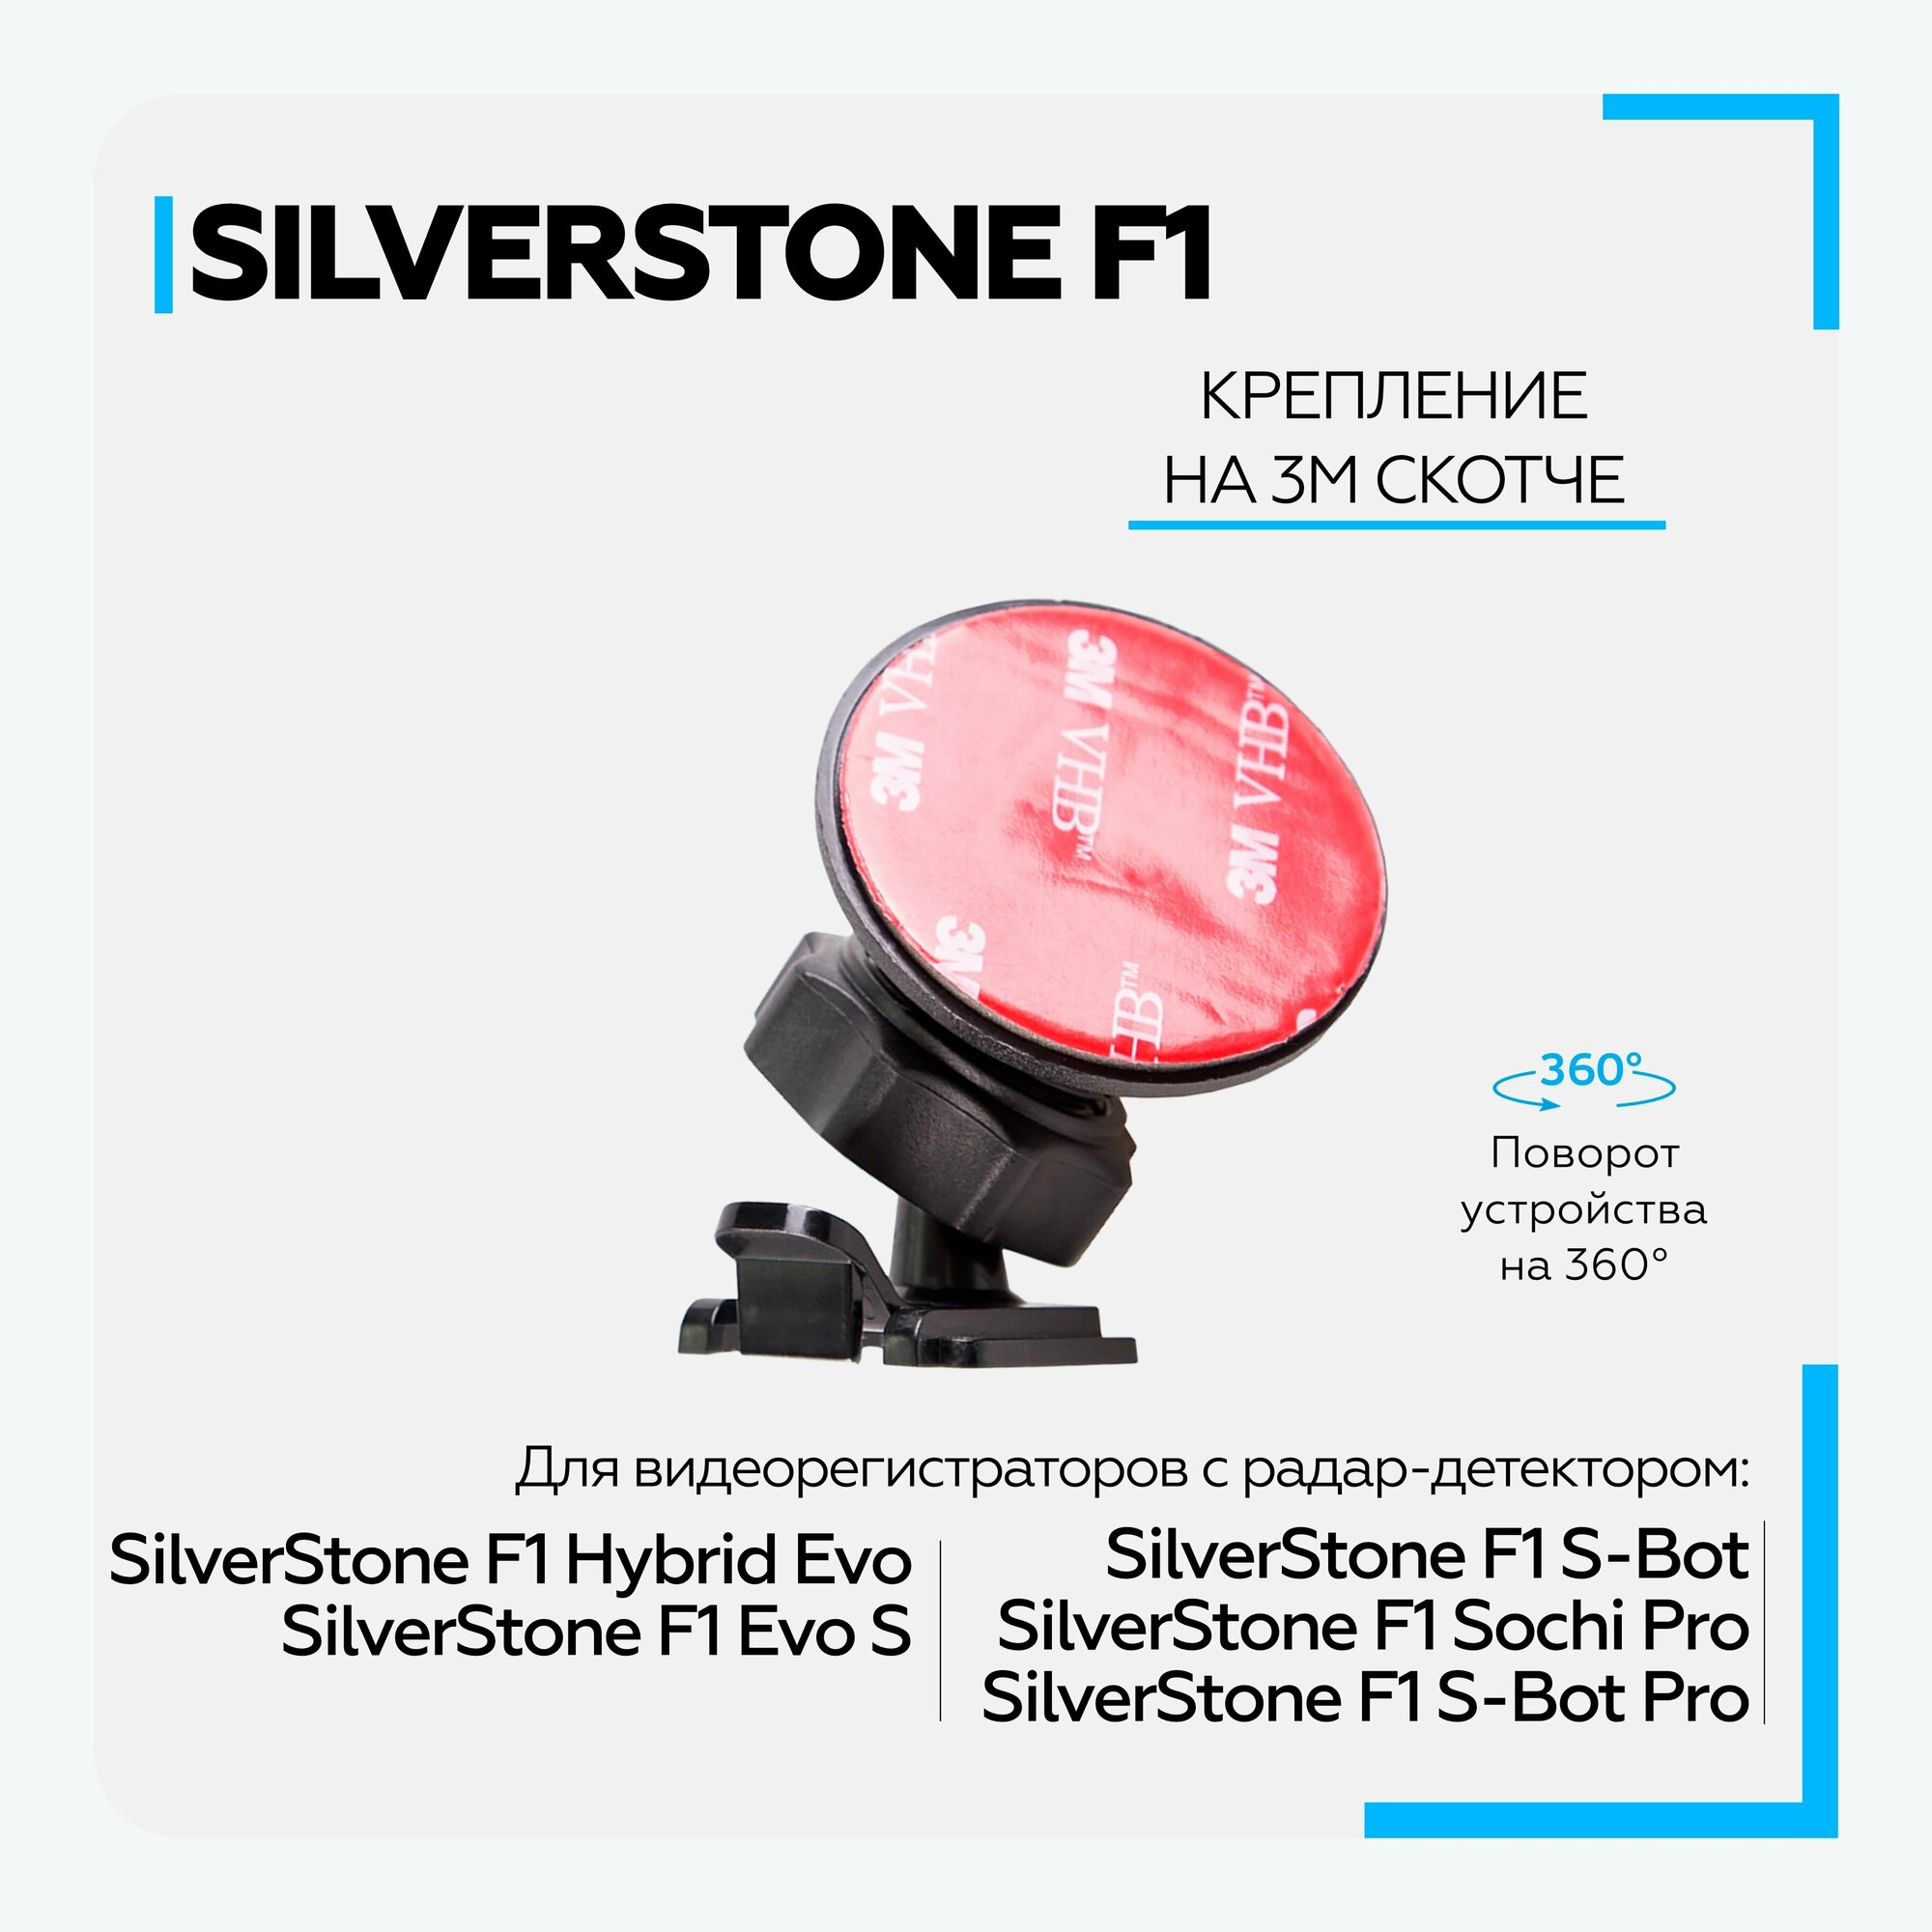 Крепление для видеорегистраторов SilverStone F1 HYBRID EVO/ EVO S/ S-BOT/ SOCHI PRO на 3М скотче